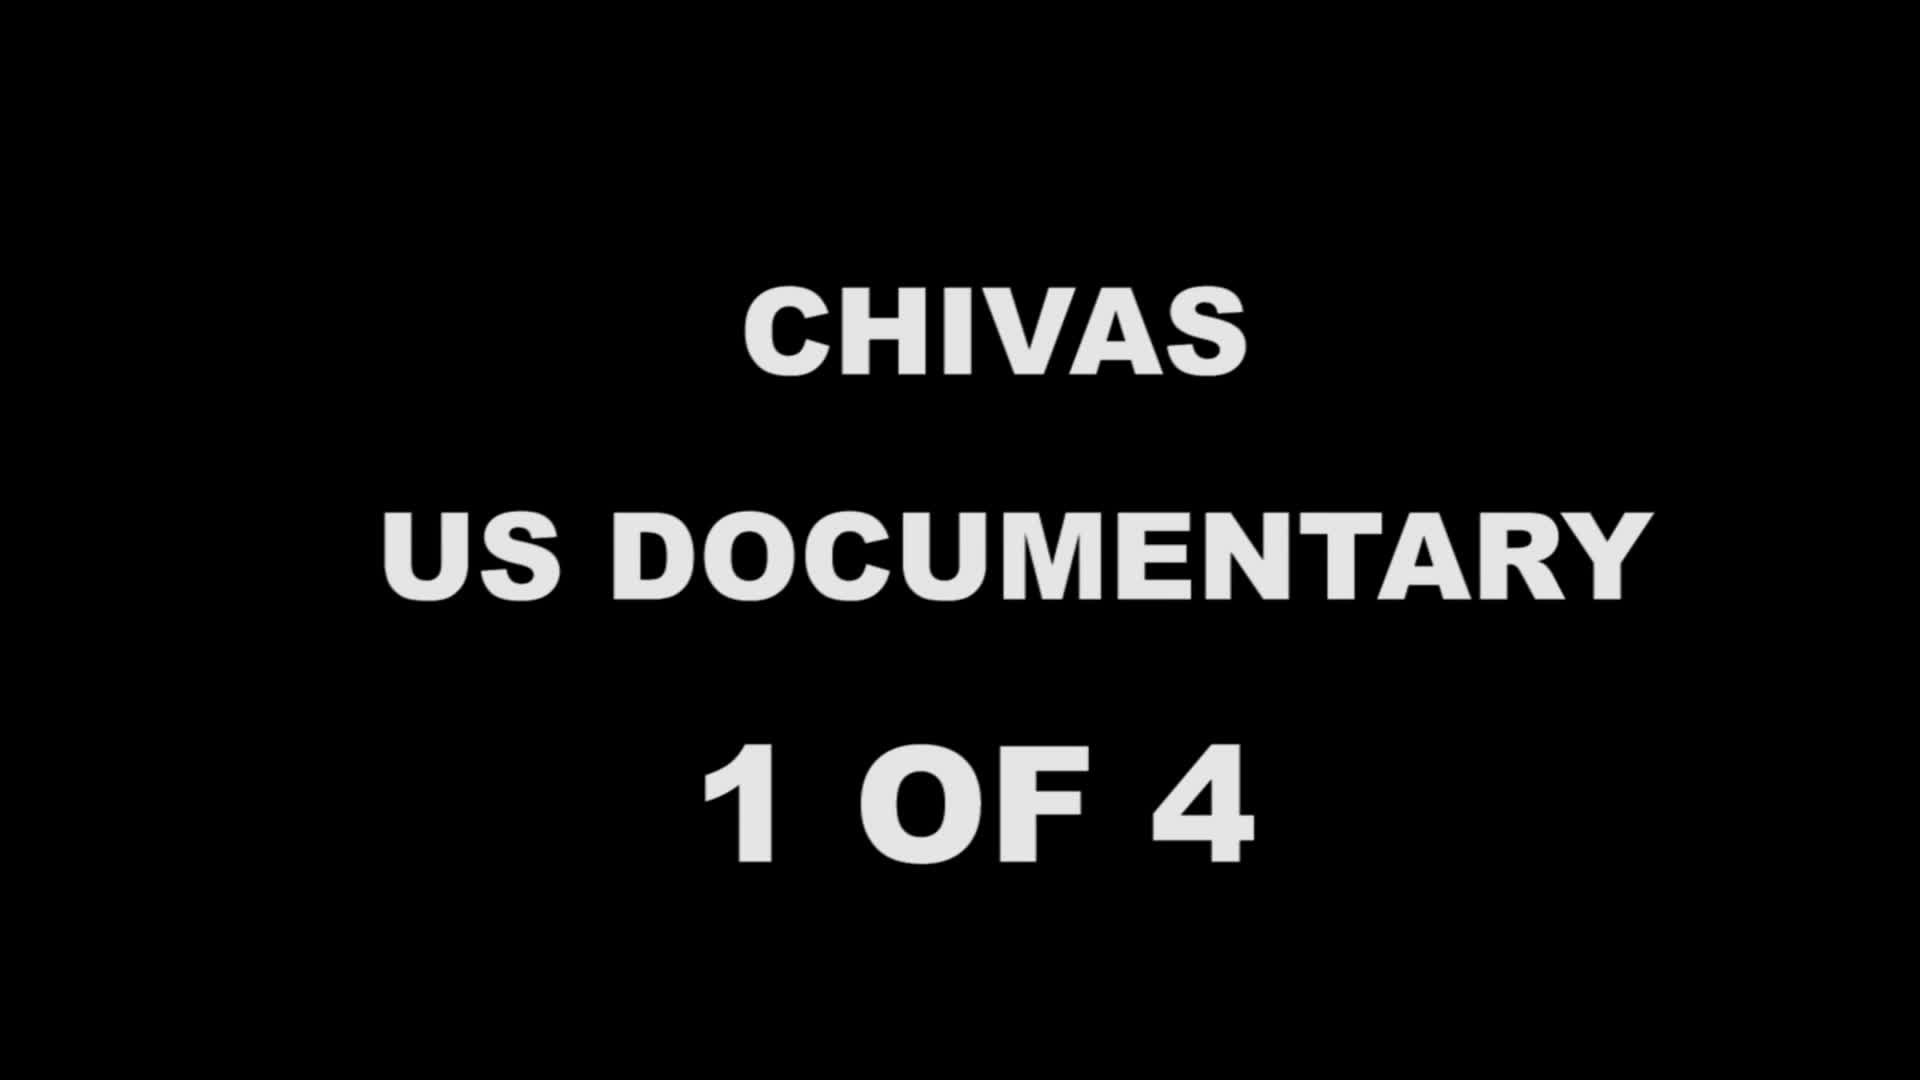 CHIVAS